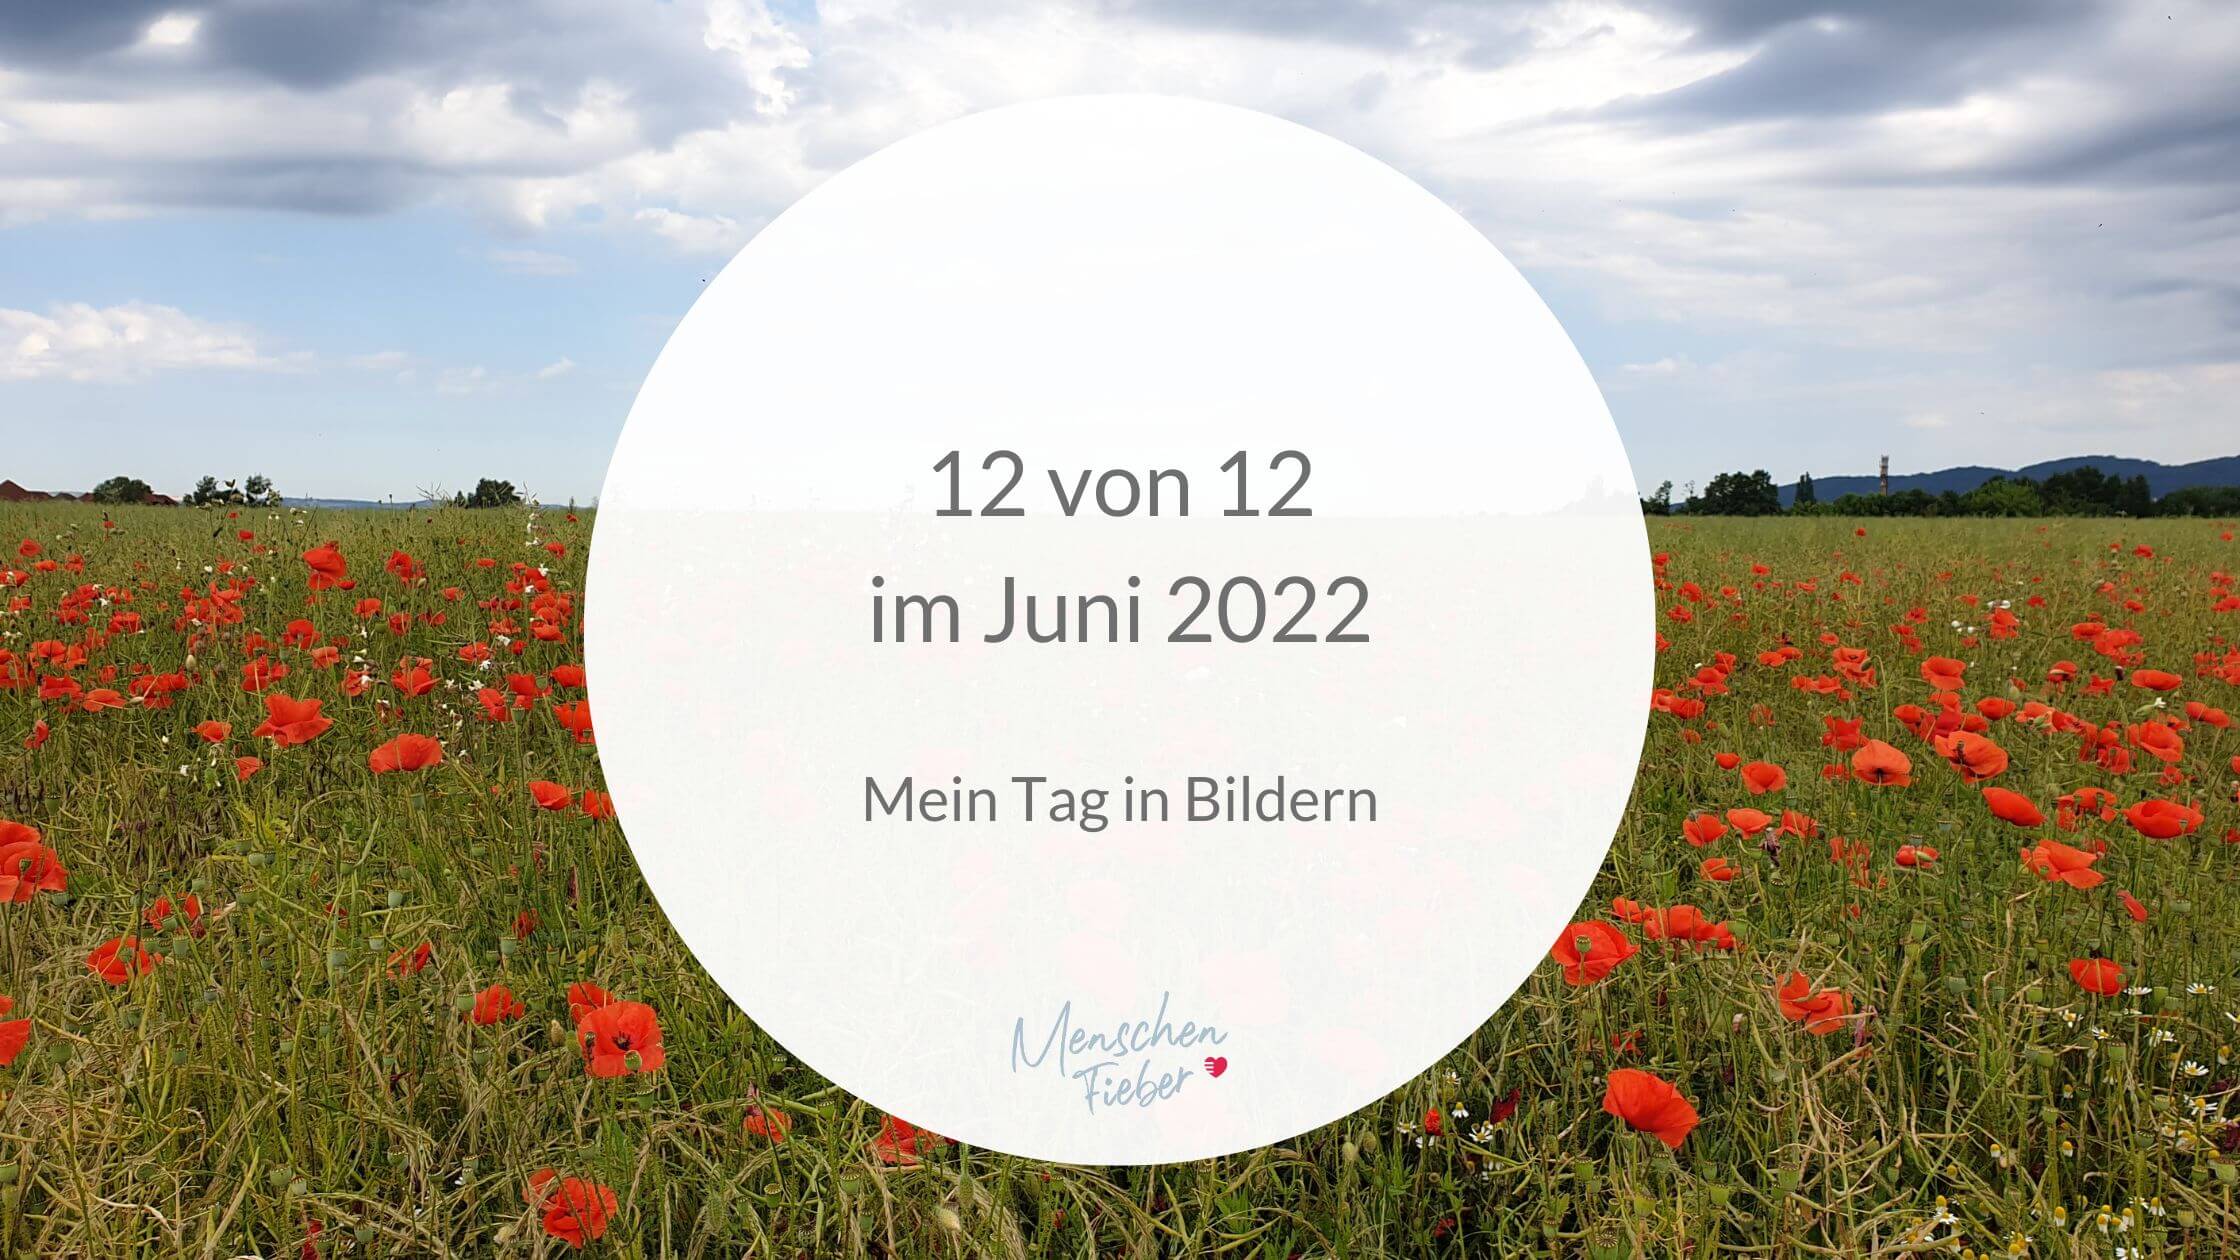 12 von 12 im Juni 2022: Mein Tag in Bildern